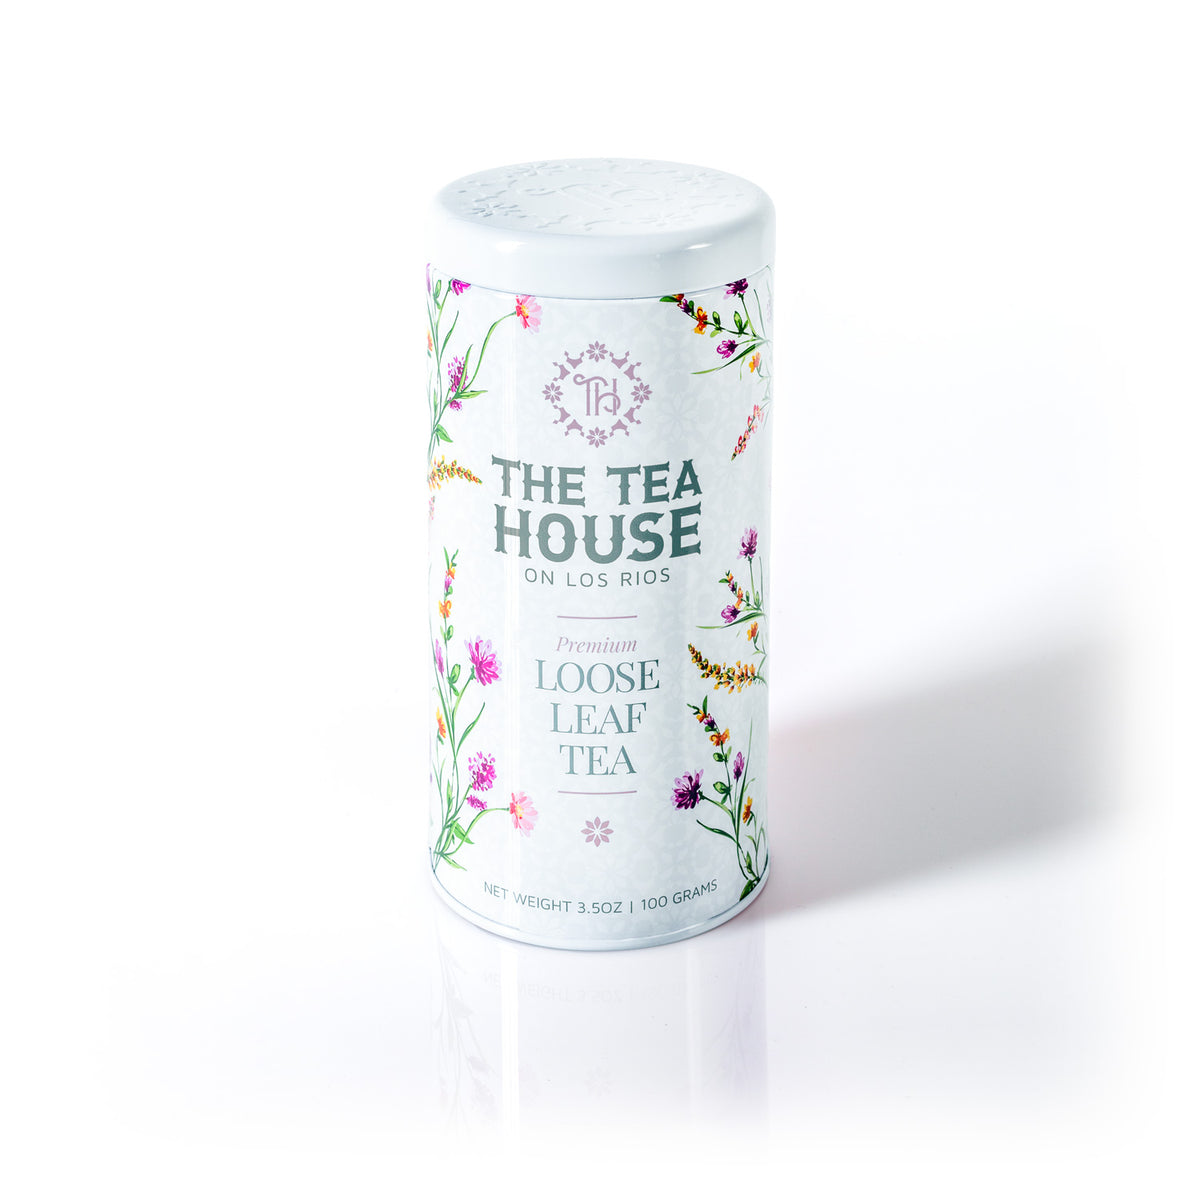 The Tea House on Los Rios presents a 100g Loose Leaf Tea Tin